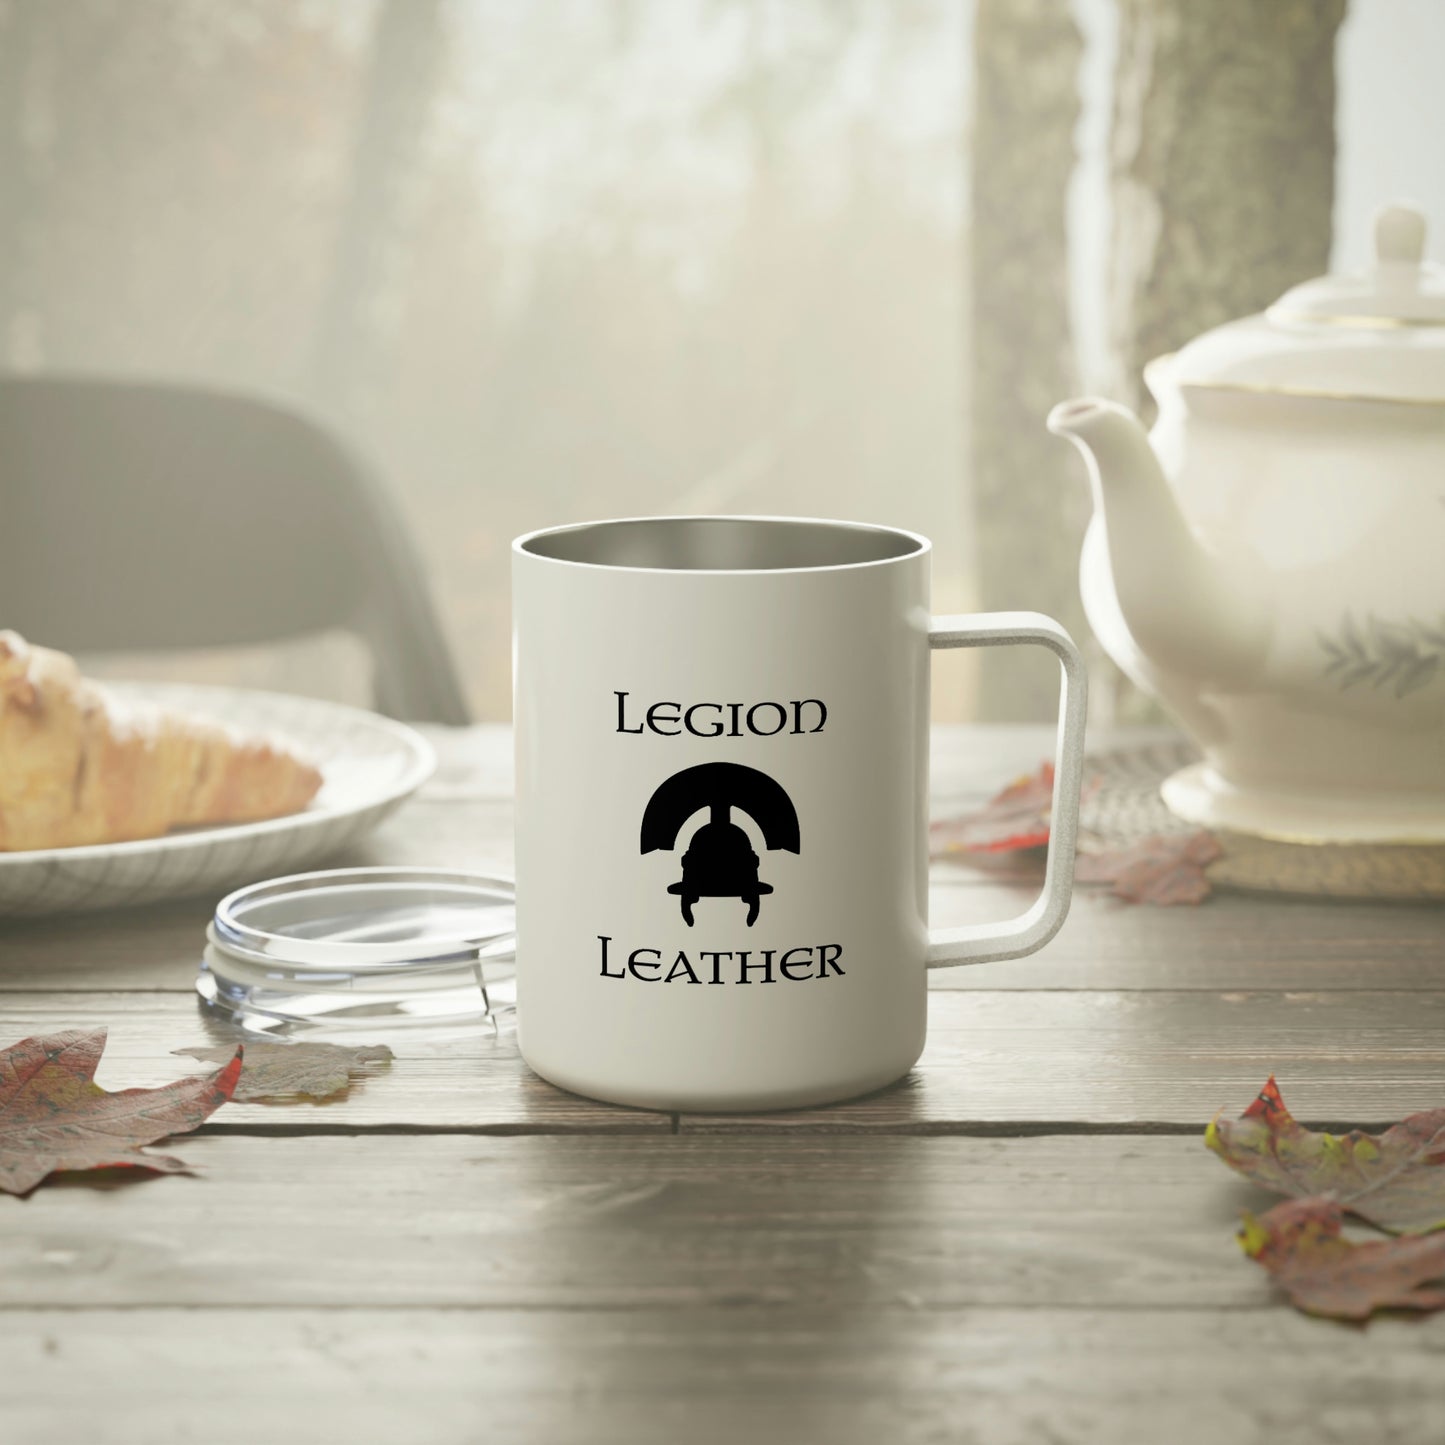 Legion Leather Insulated Coffee Mug, 10oz